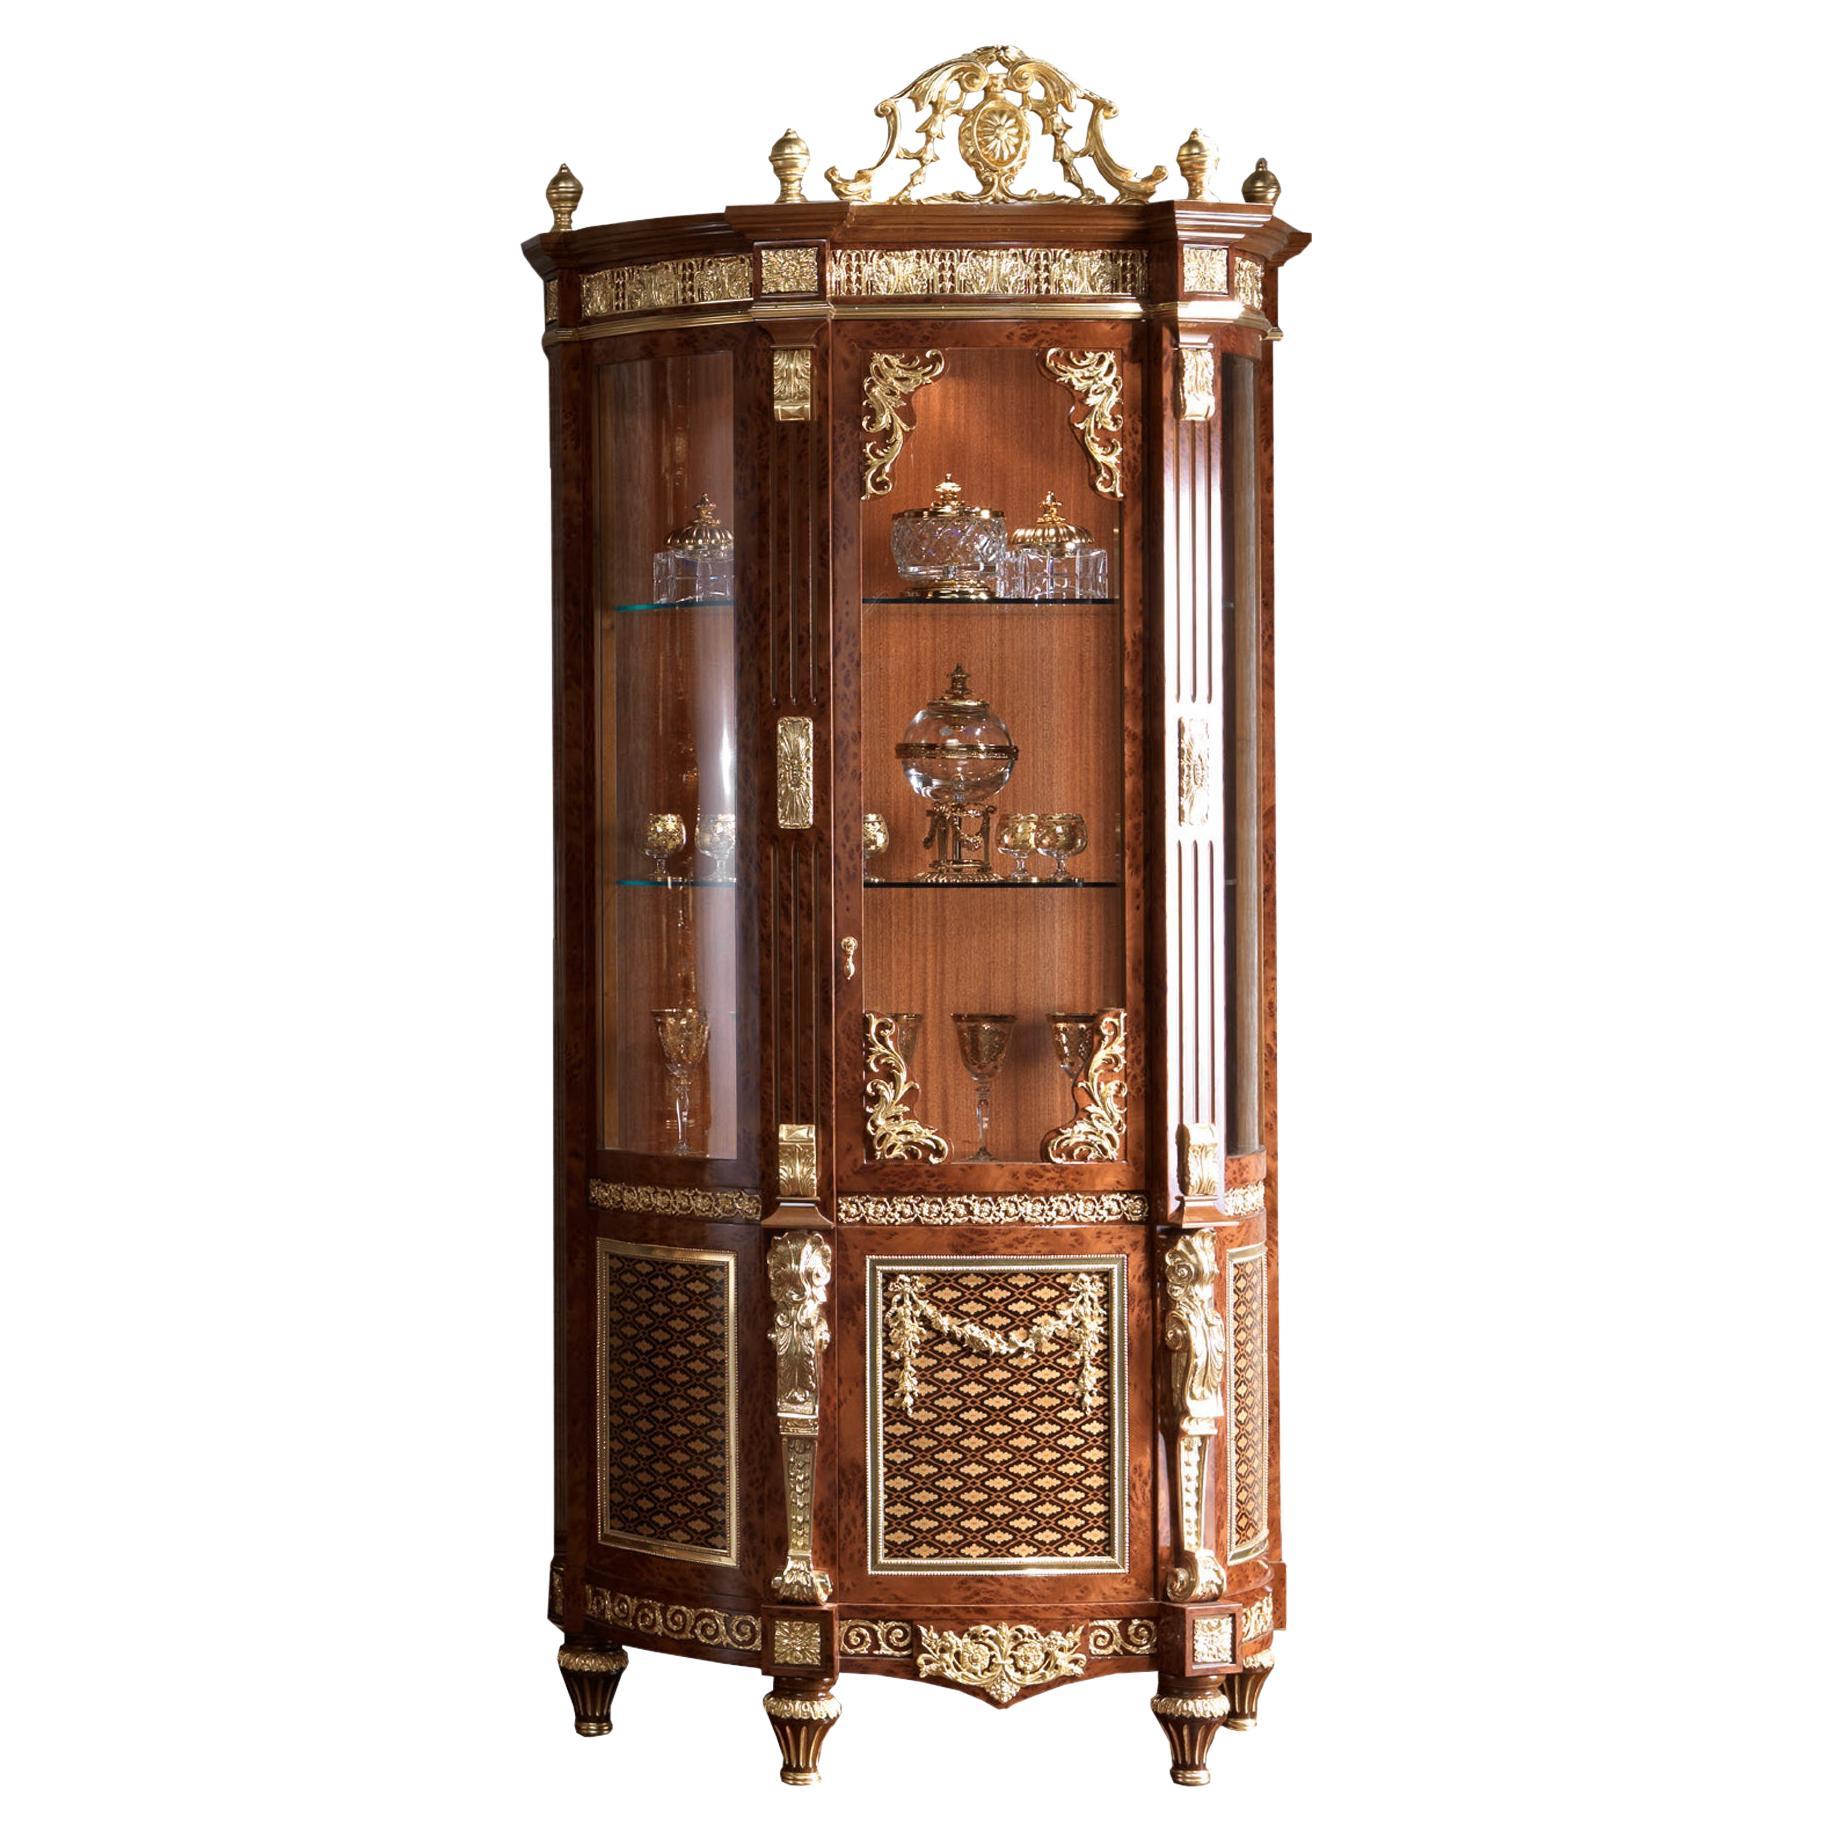 Barocke Beistellvitrine aus dem Barock mit Furnier und Blattgolddetails von Modenese Luxury